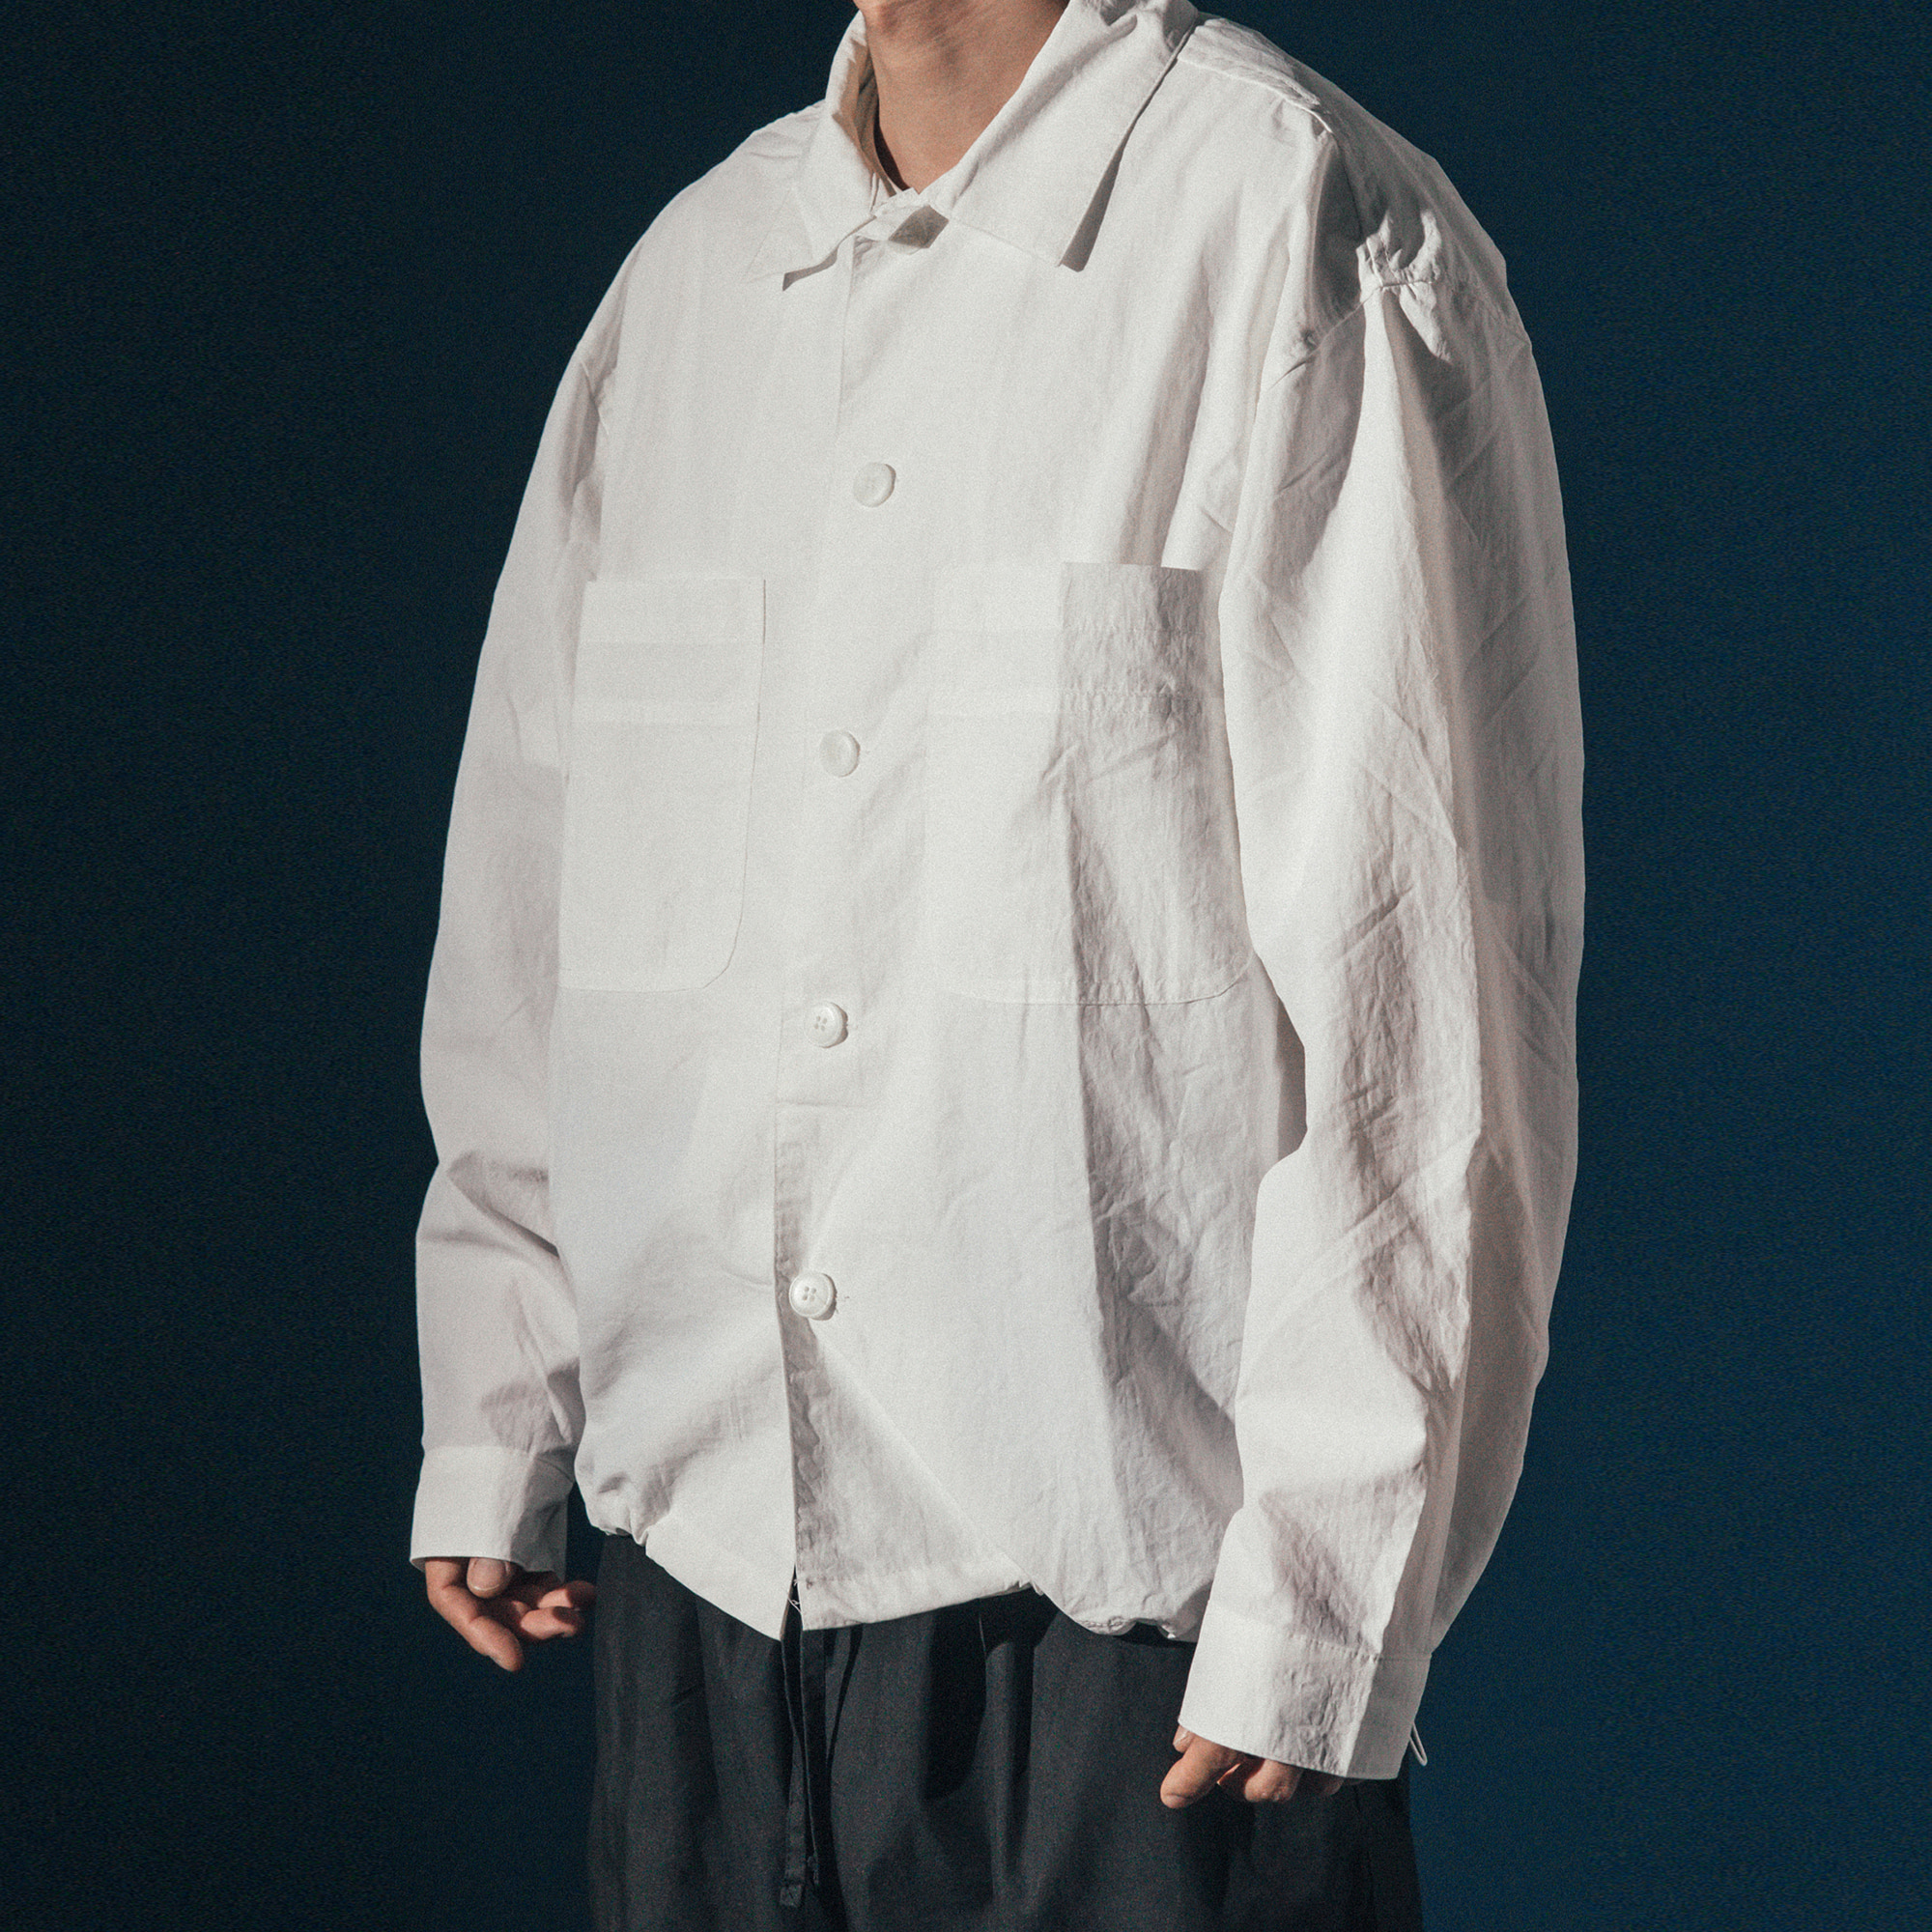 Nylon String Shirt Jacket - White